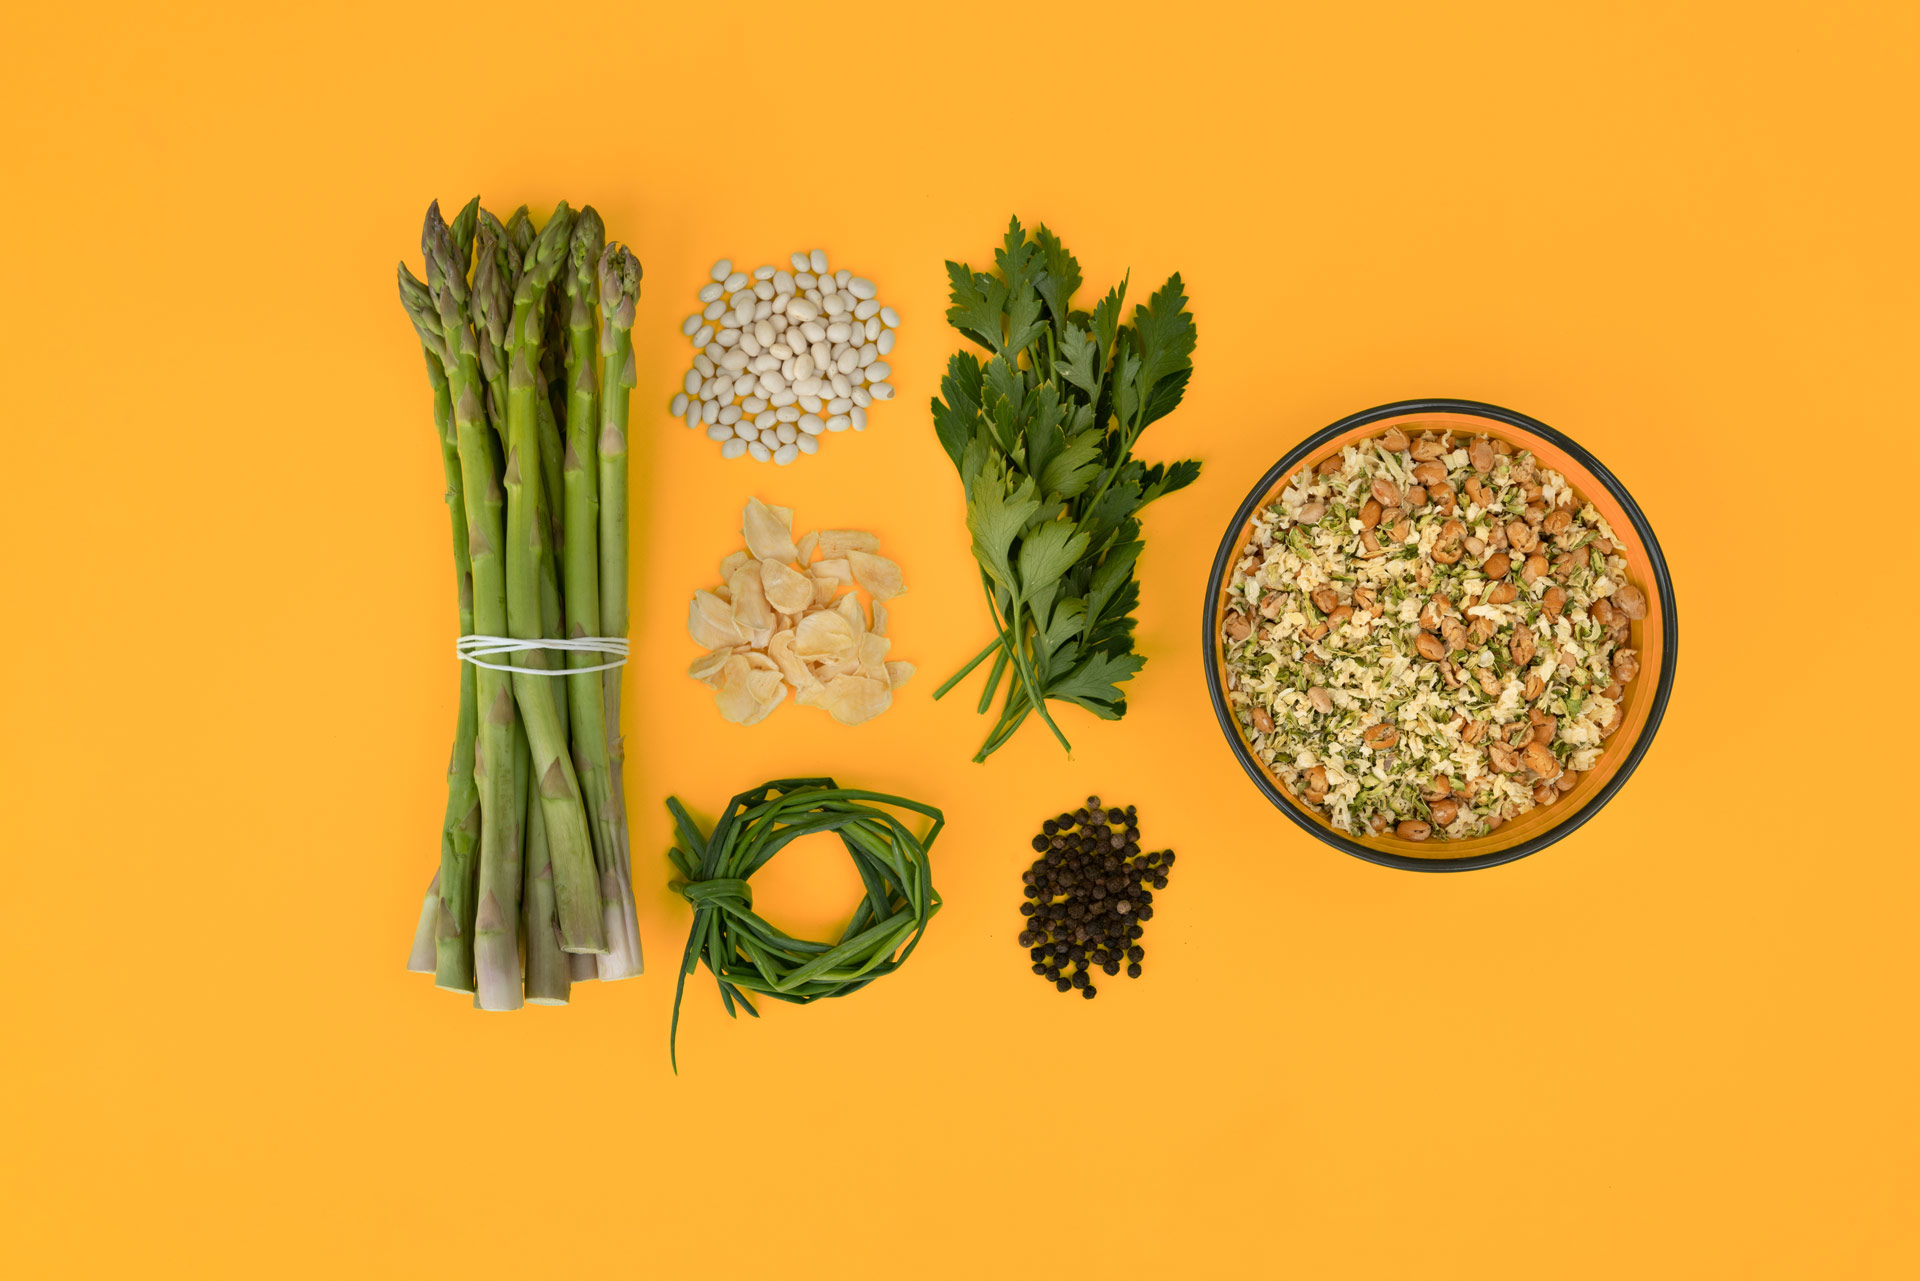 La zuppa pronta Ivo’s ai legumi è un pasto salutare ed equilibrato con ingredienti biologici